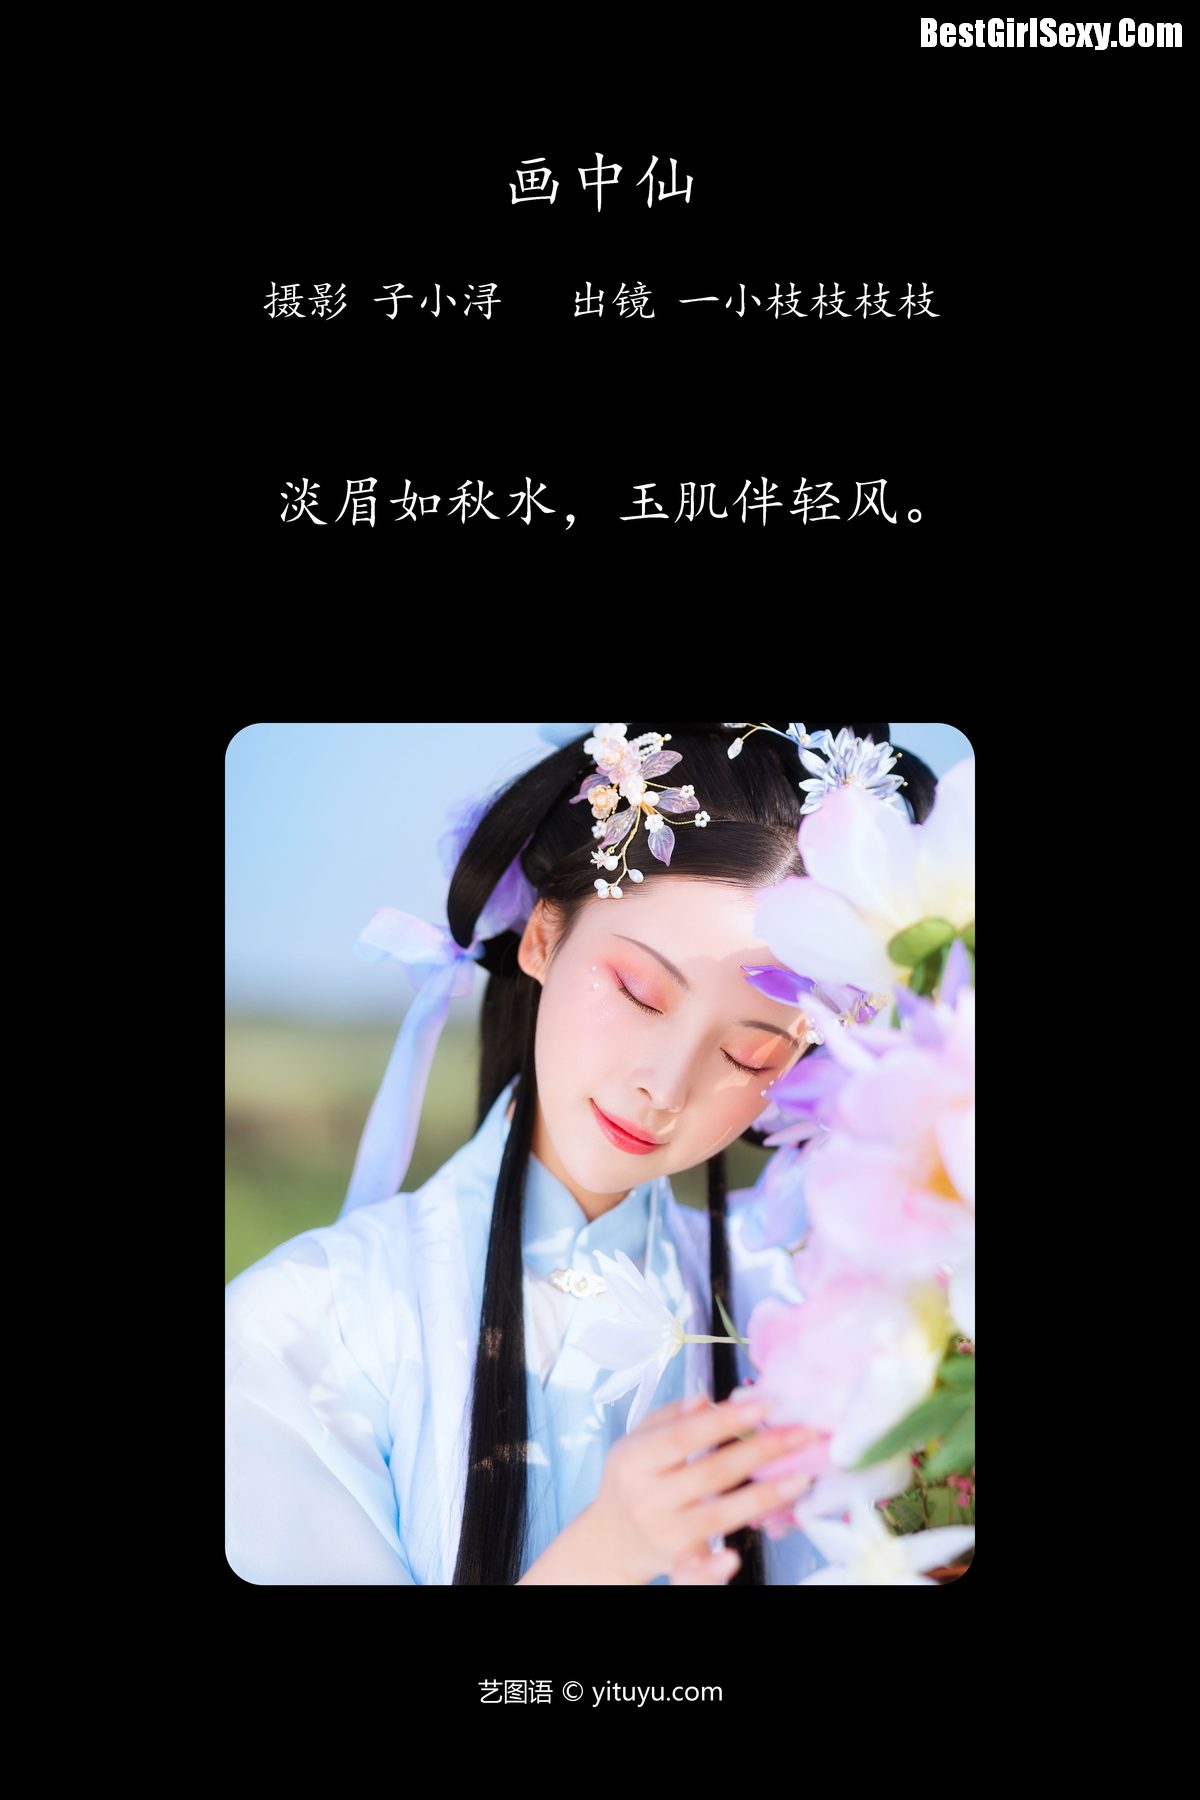 YiTuYu艺图语 Vol 4069 Yi Xiao Zhi Zhi Zhi Zhi 0002 4262151139.jpg